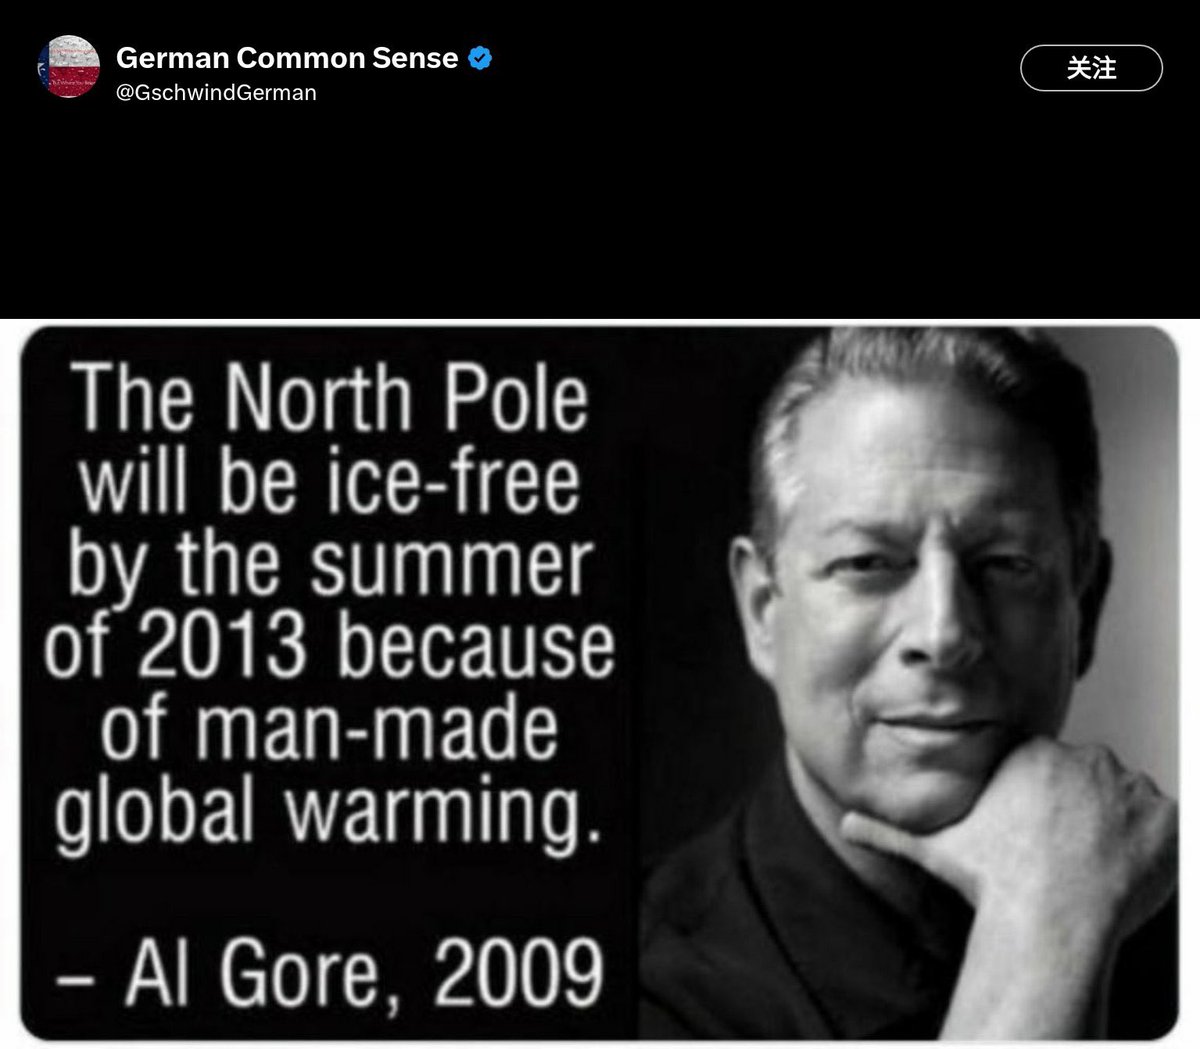 由於人為造成的全球暖化，到 2013 年夏天，北極將不再有冰。

-阿爾·戈爾，2009